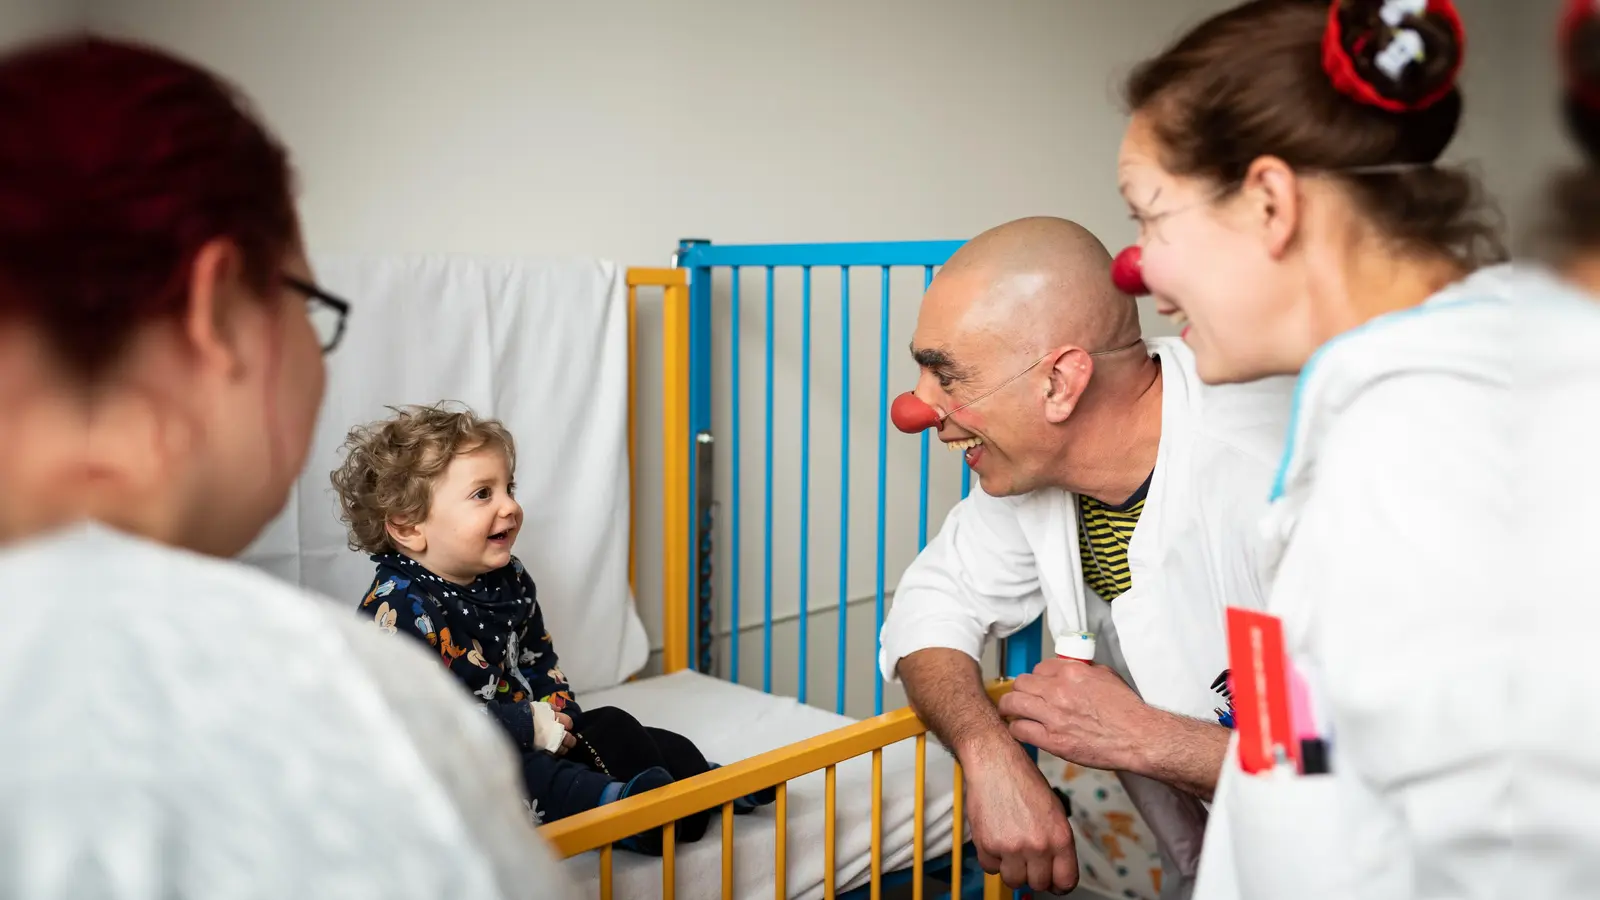 Kranken und pflegebedürftigen Menschen ein Lachen schenken - das ist die Aufgabe der KlinikClowns. (Foto: Sebastian Höhn)